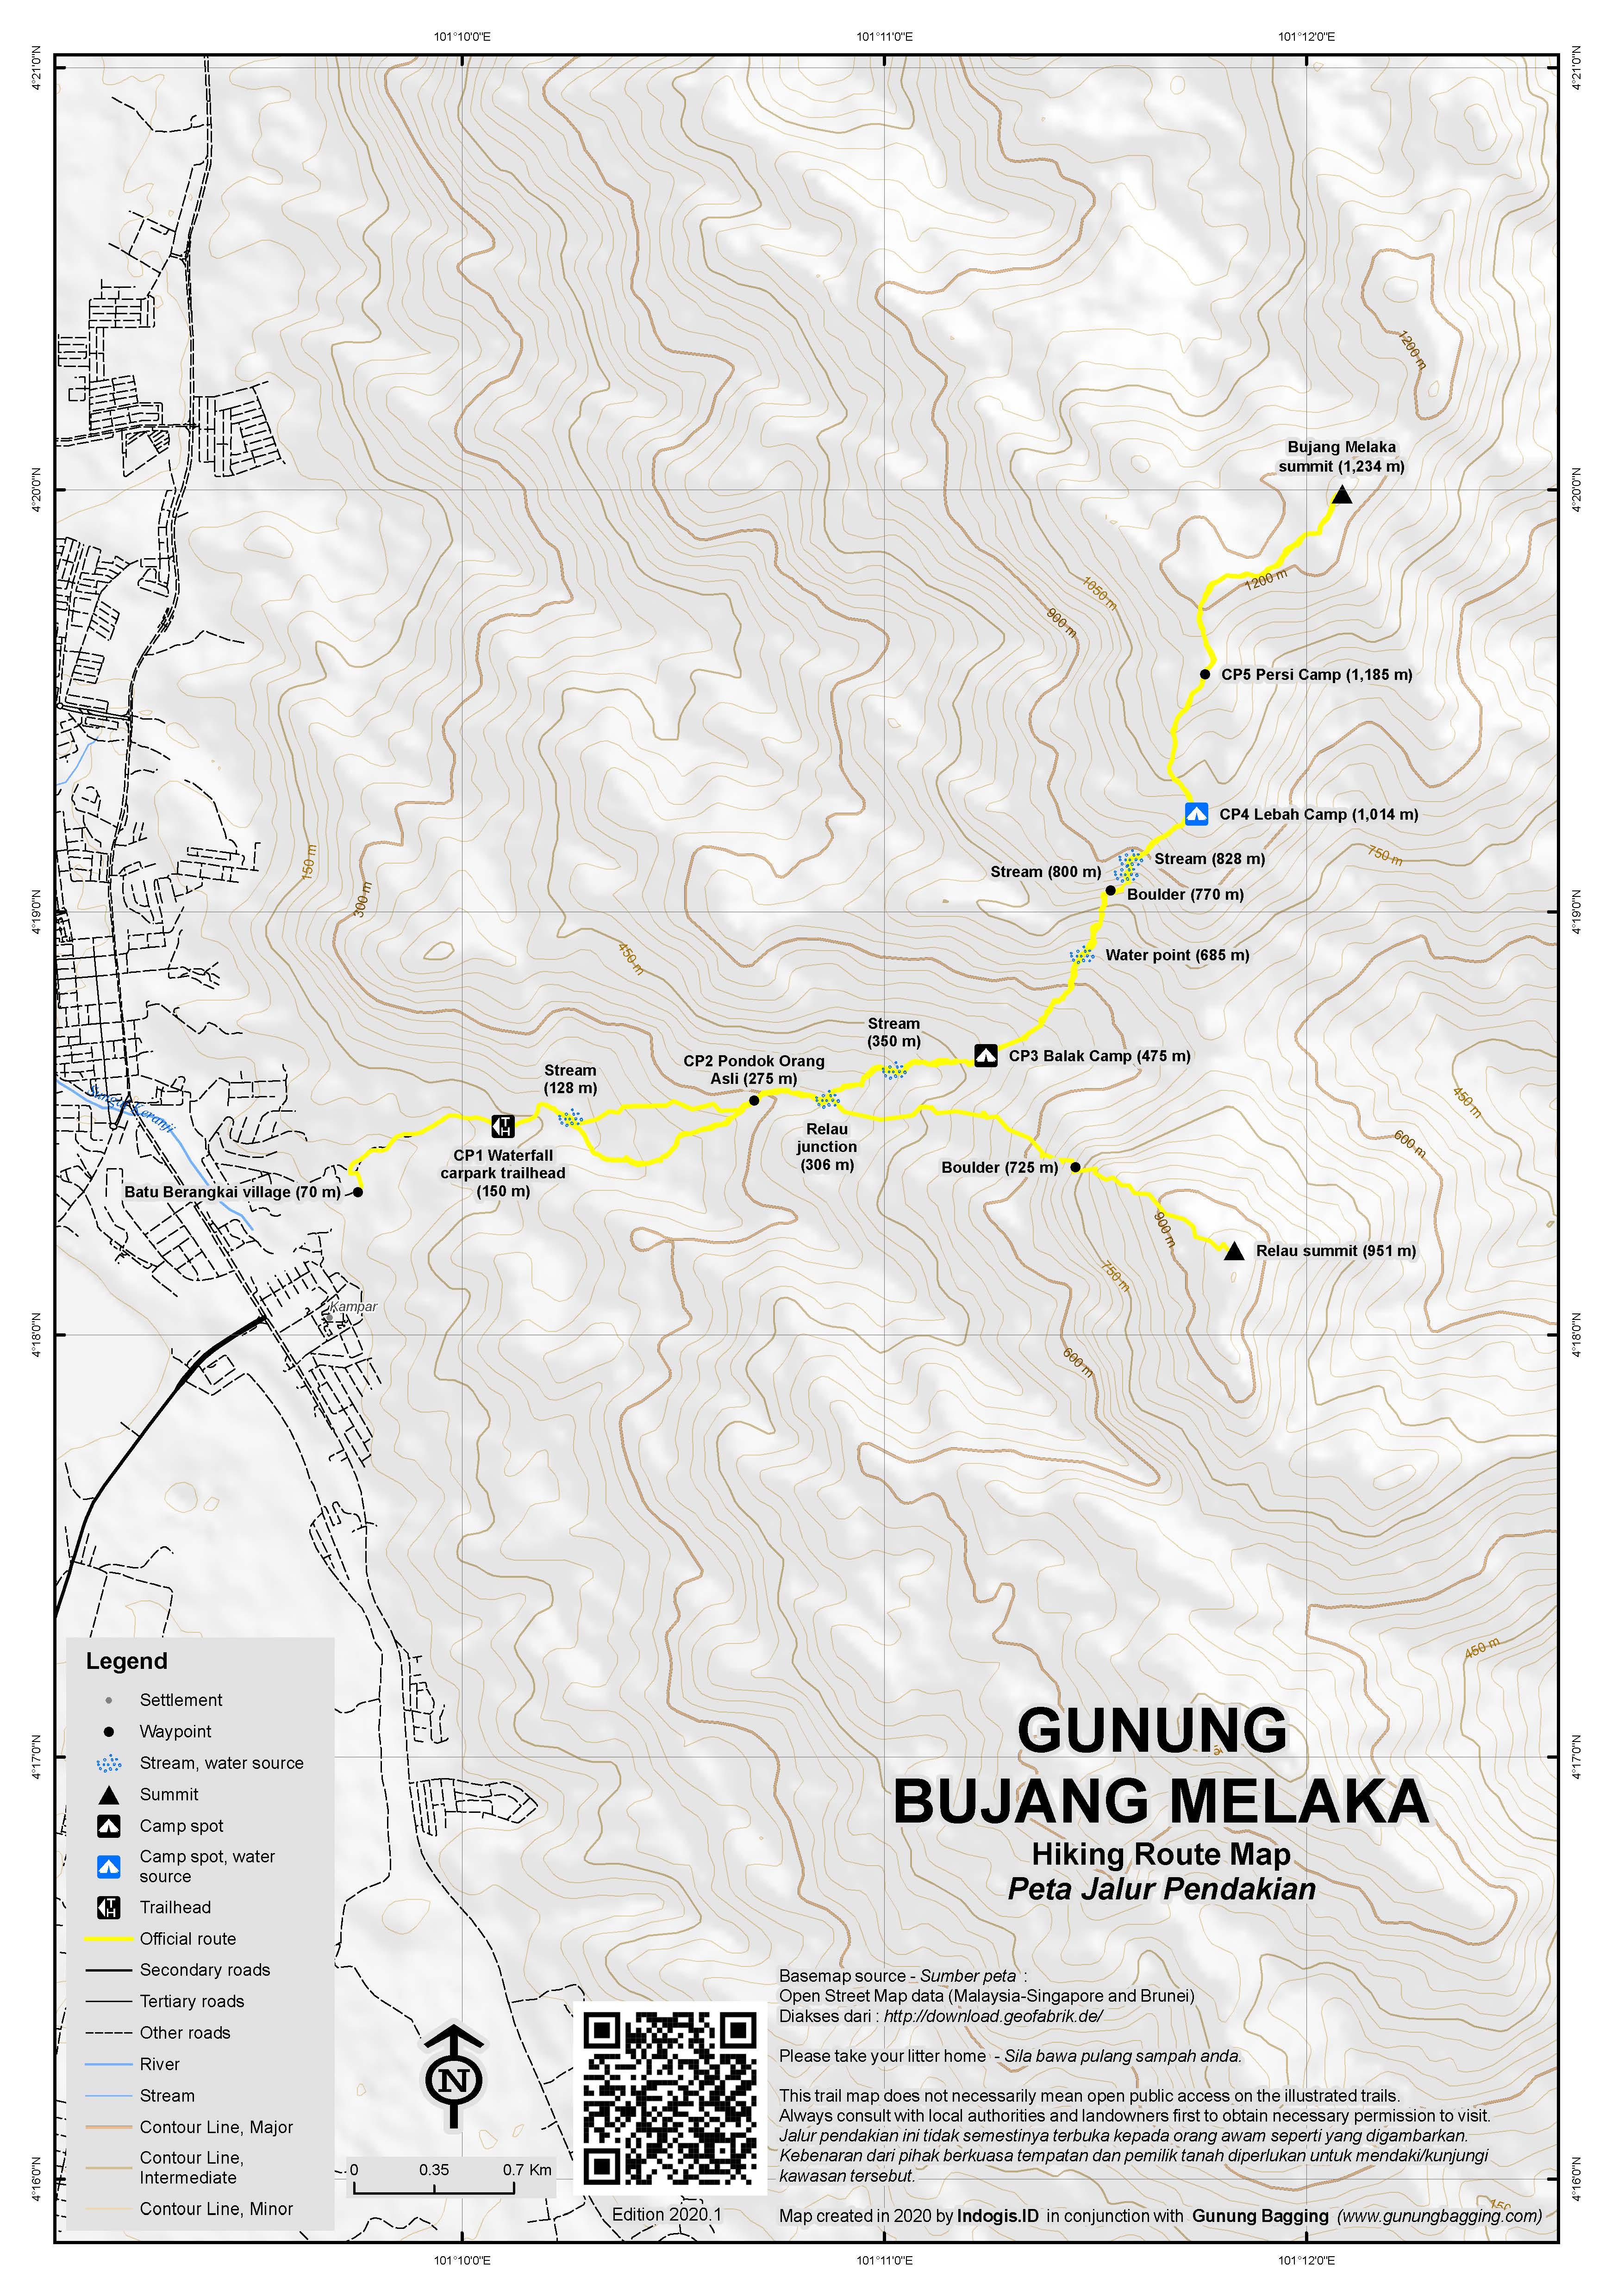 Peta Jalur Pendakian Gunung Bujang Melaka